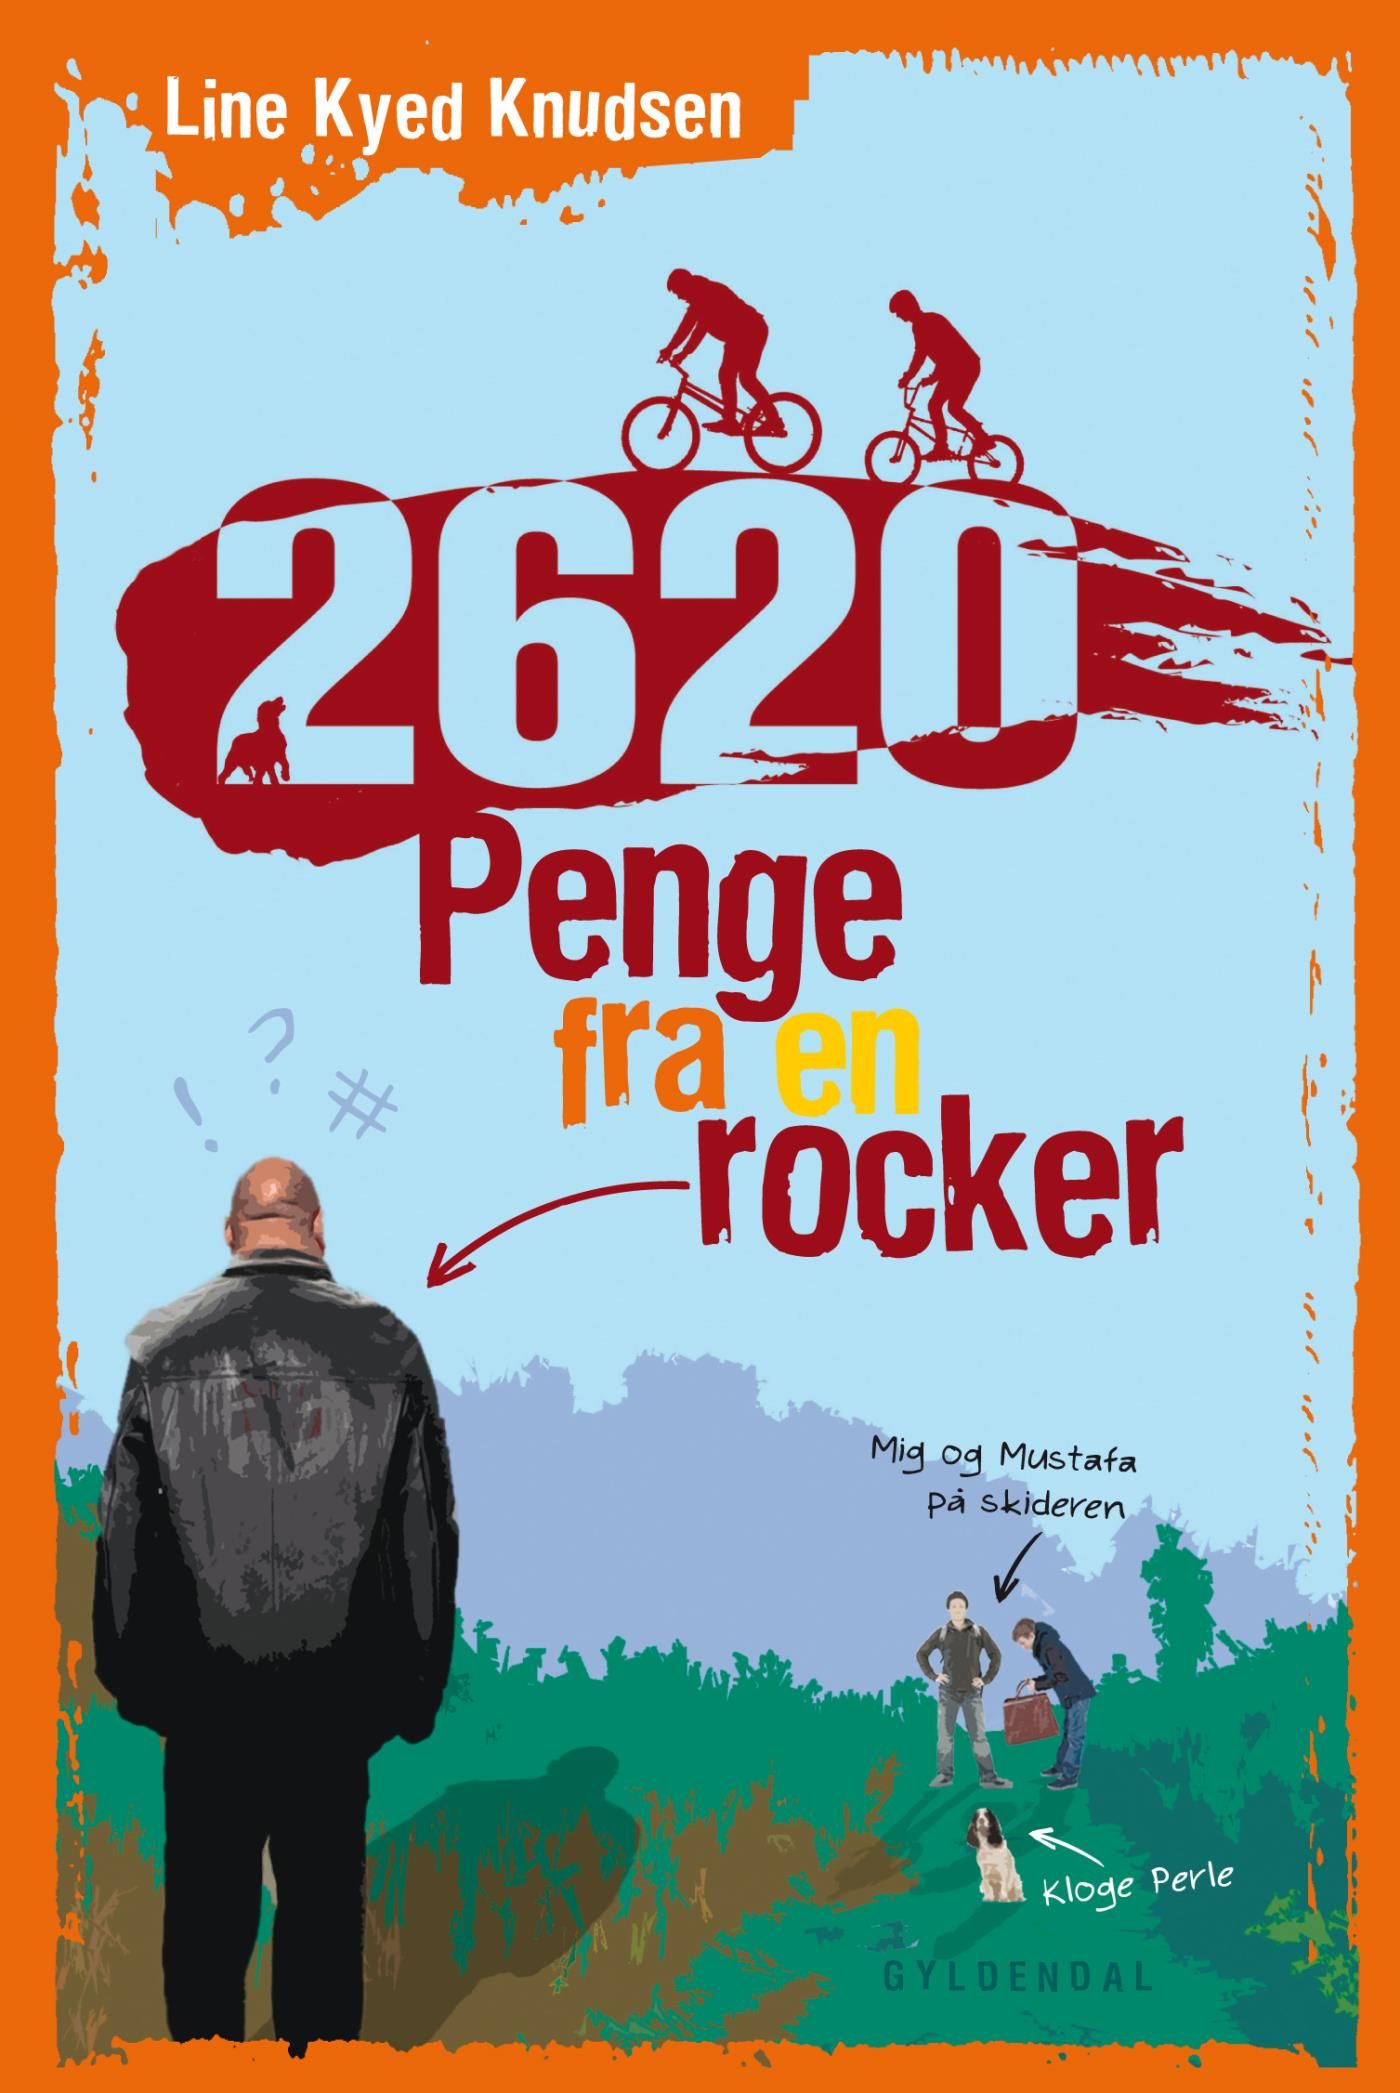 2620 1 - Penge fra en rocker, e-bog af Line Kyed Knudsen